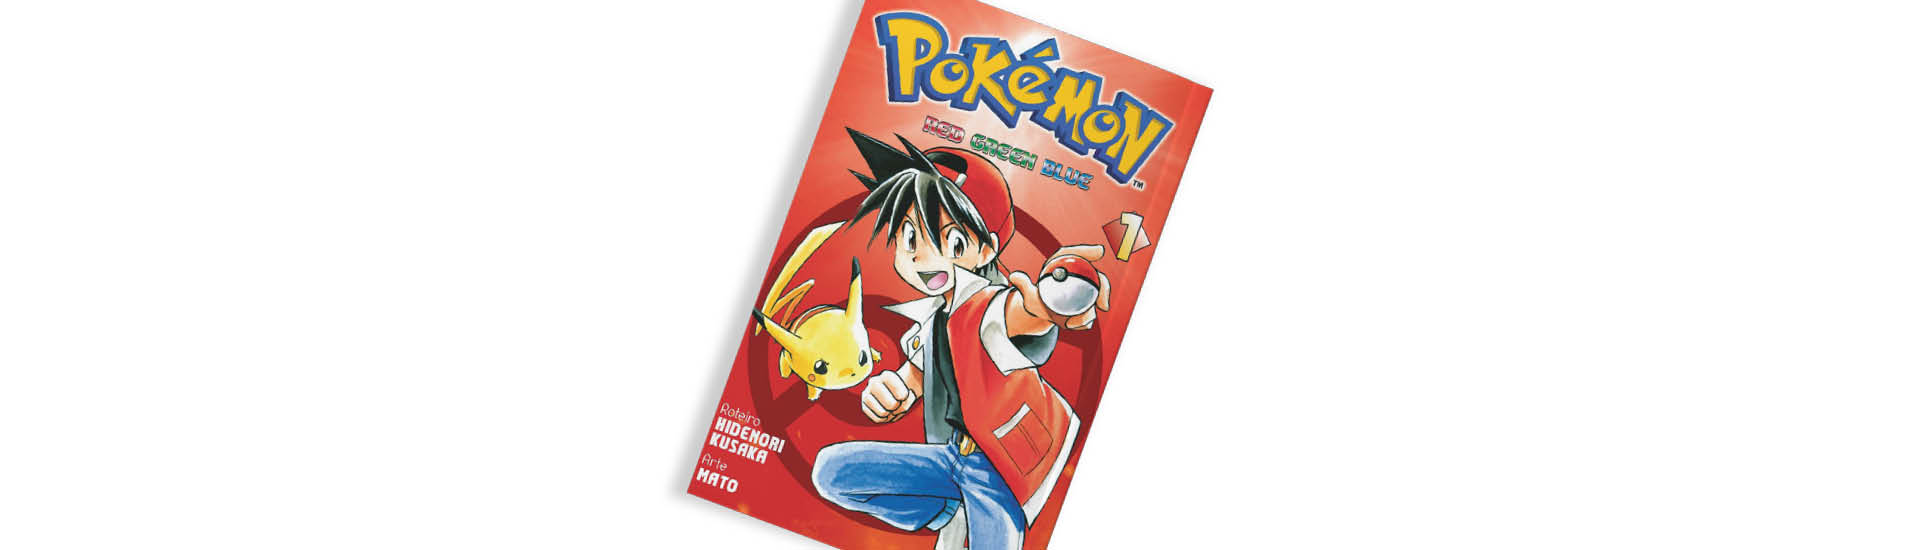 Capa do mangá Pokémon RGB